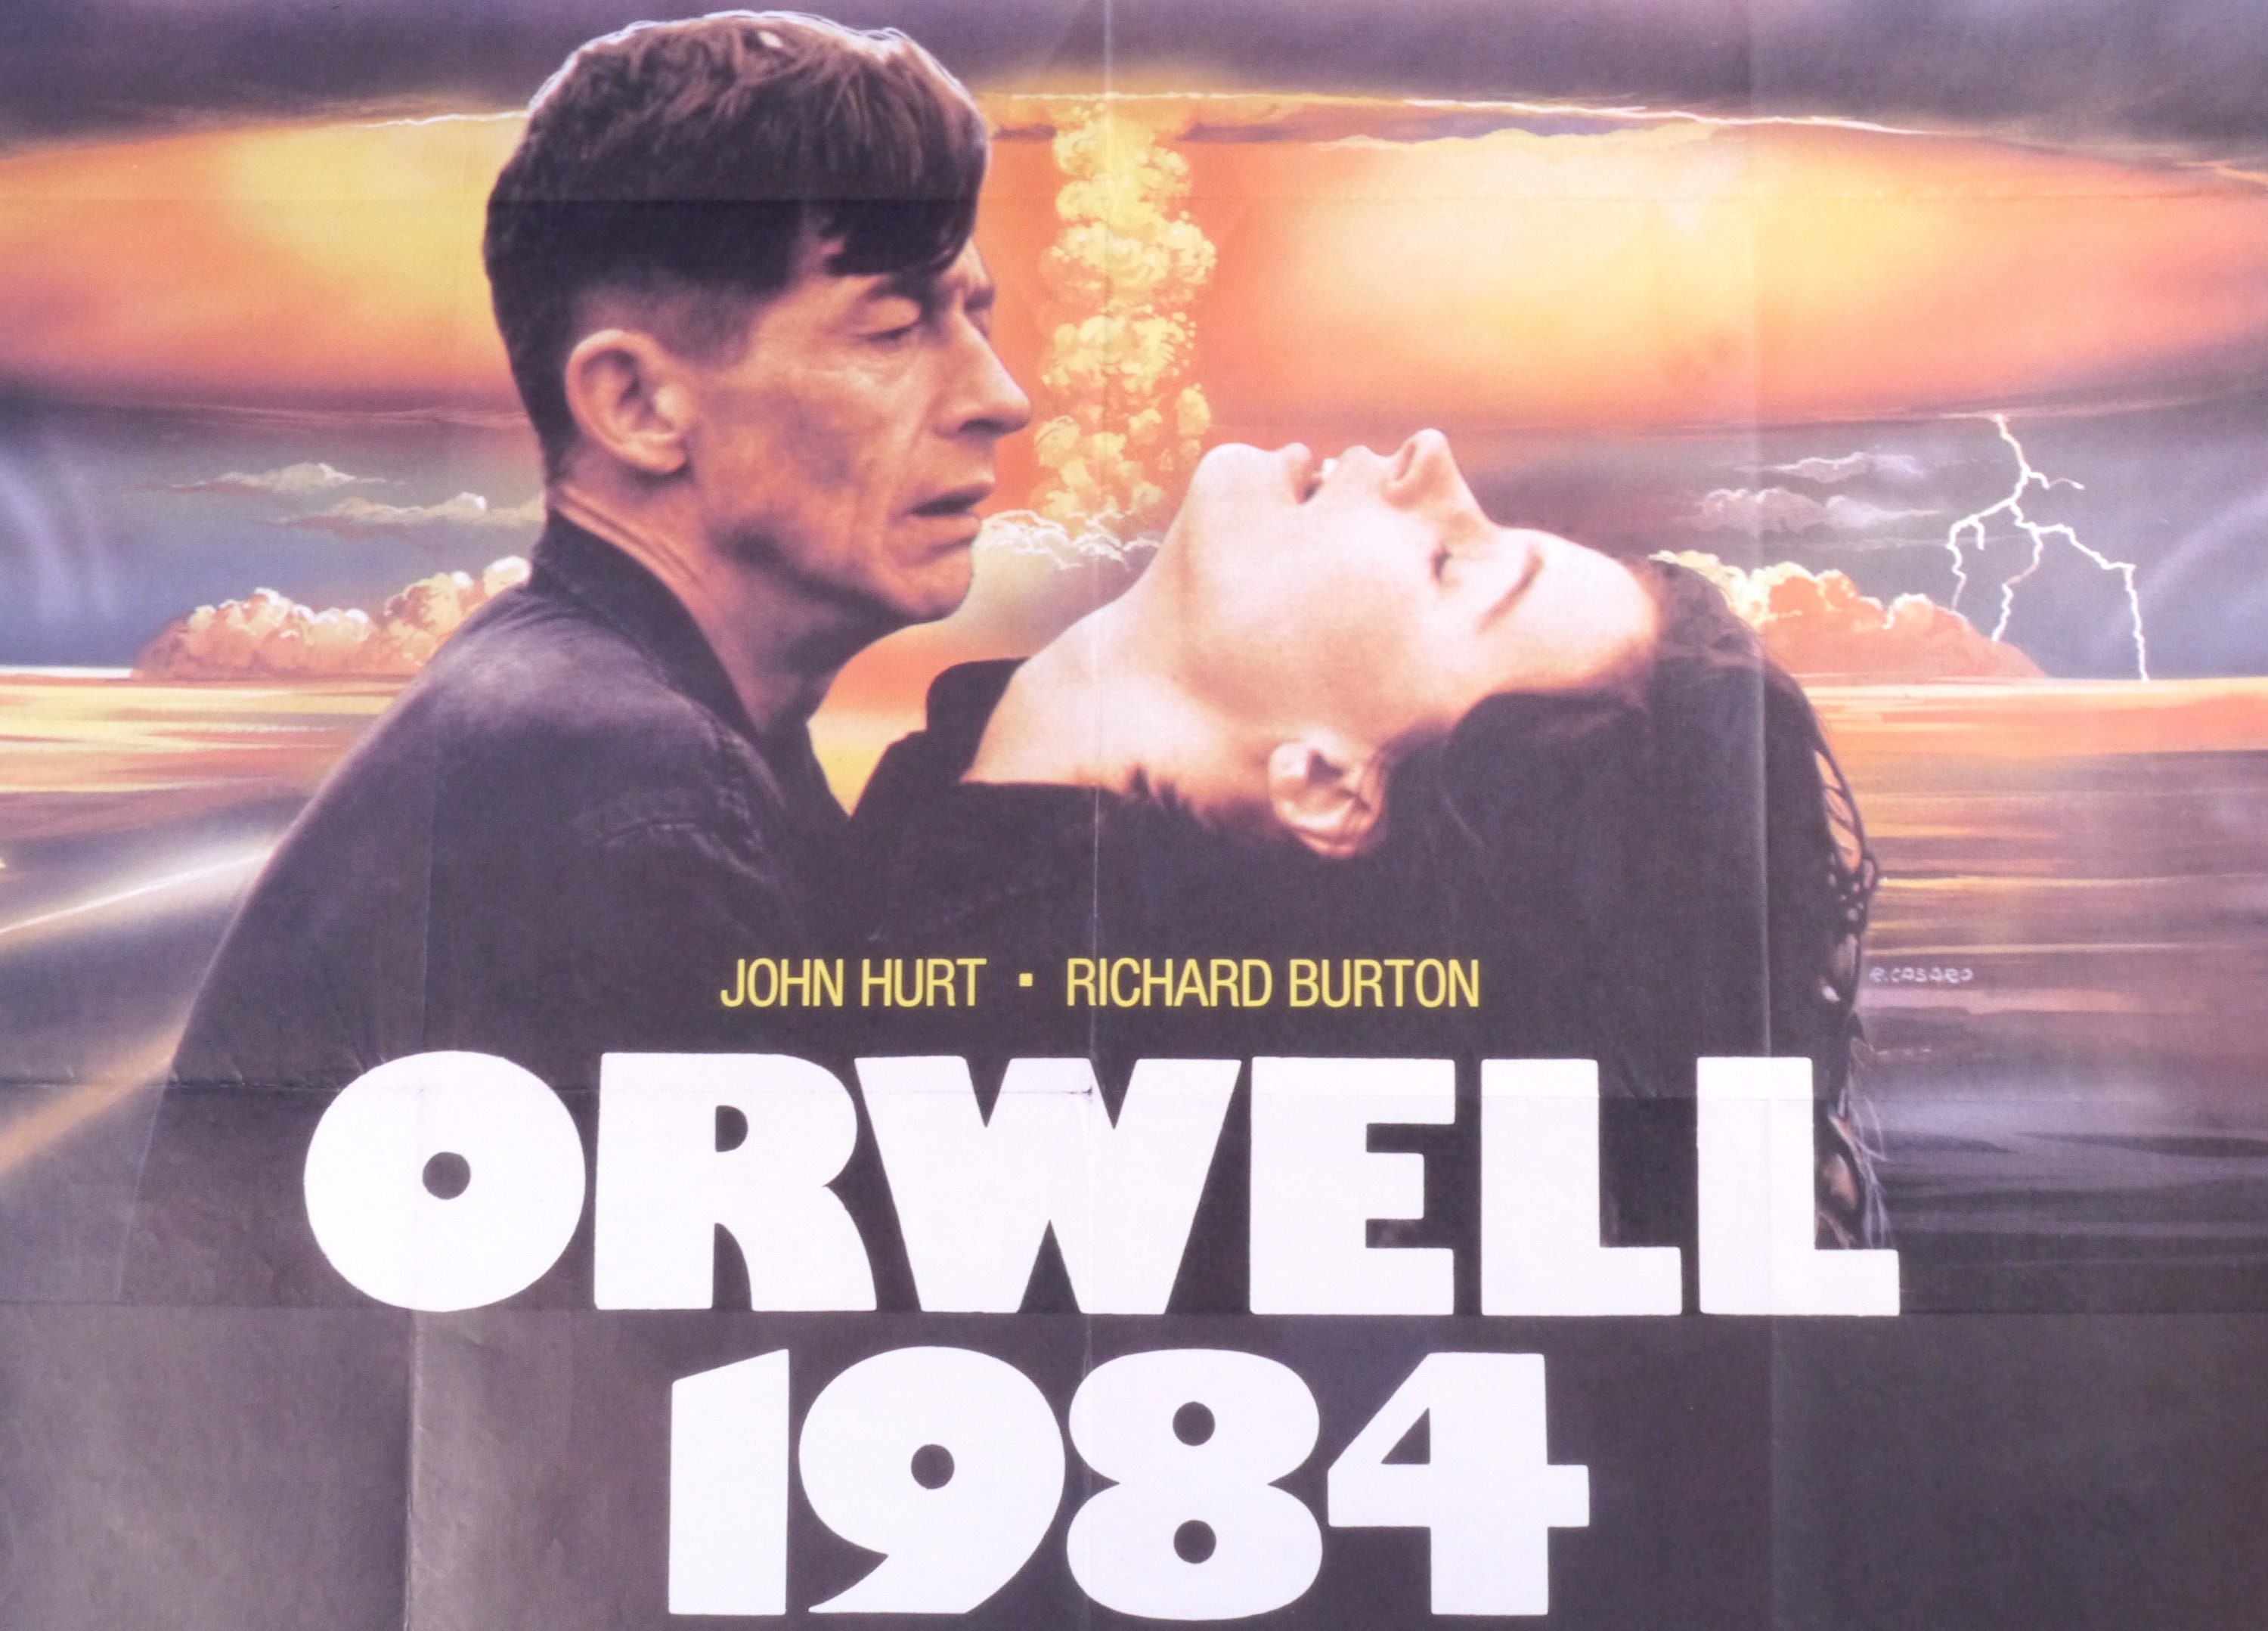 1984 GEORGE ORWELL RETRO OFFICIAL ORIGINAL MOVIE FILM PRINT PREMIUM POSTER